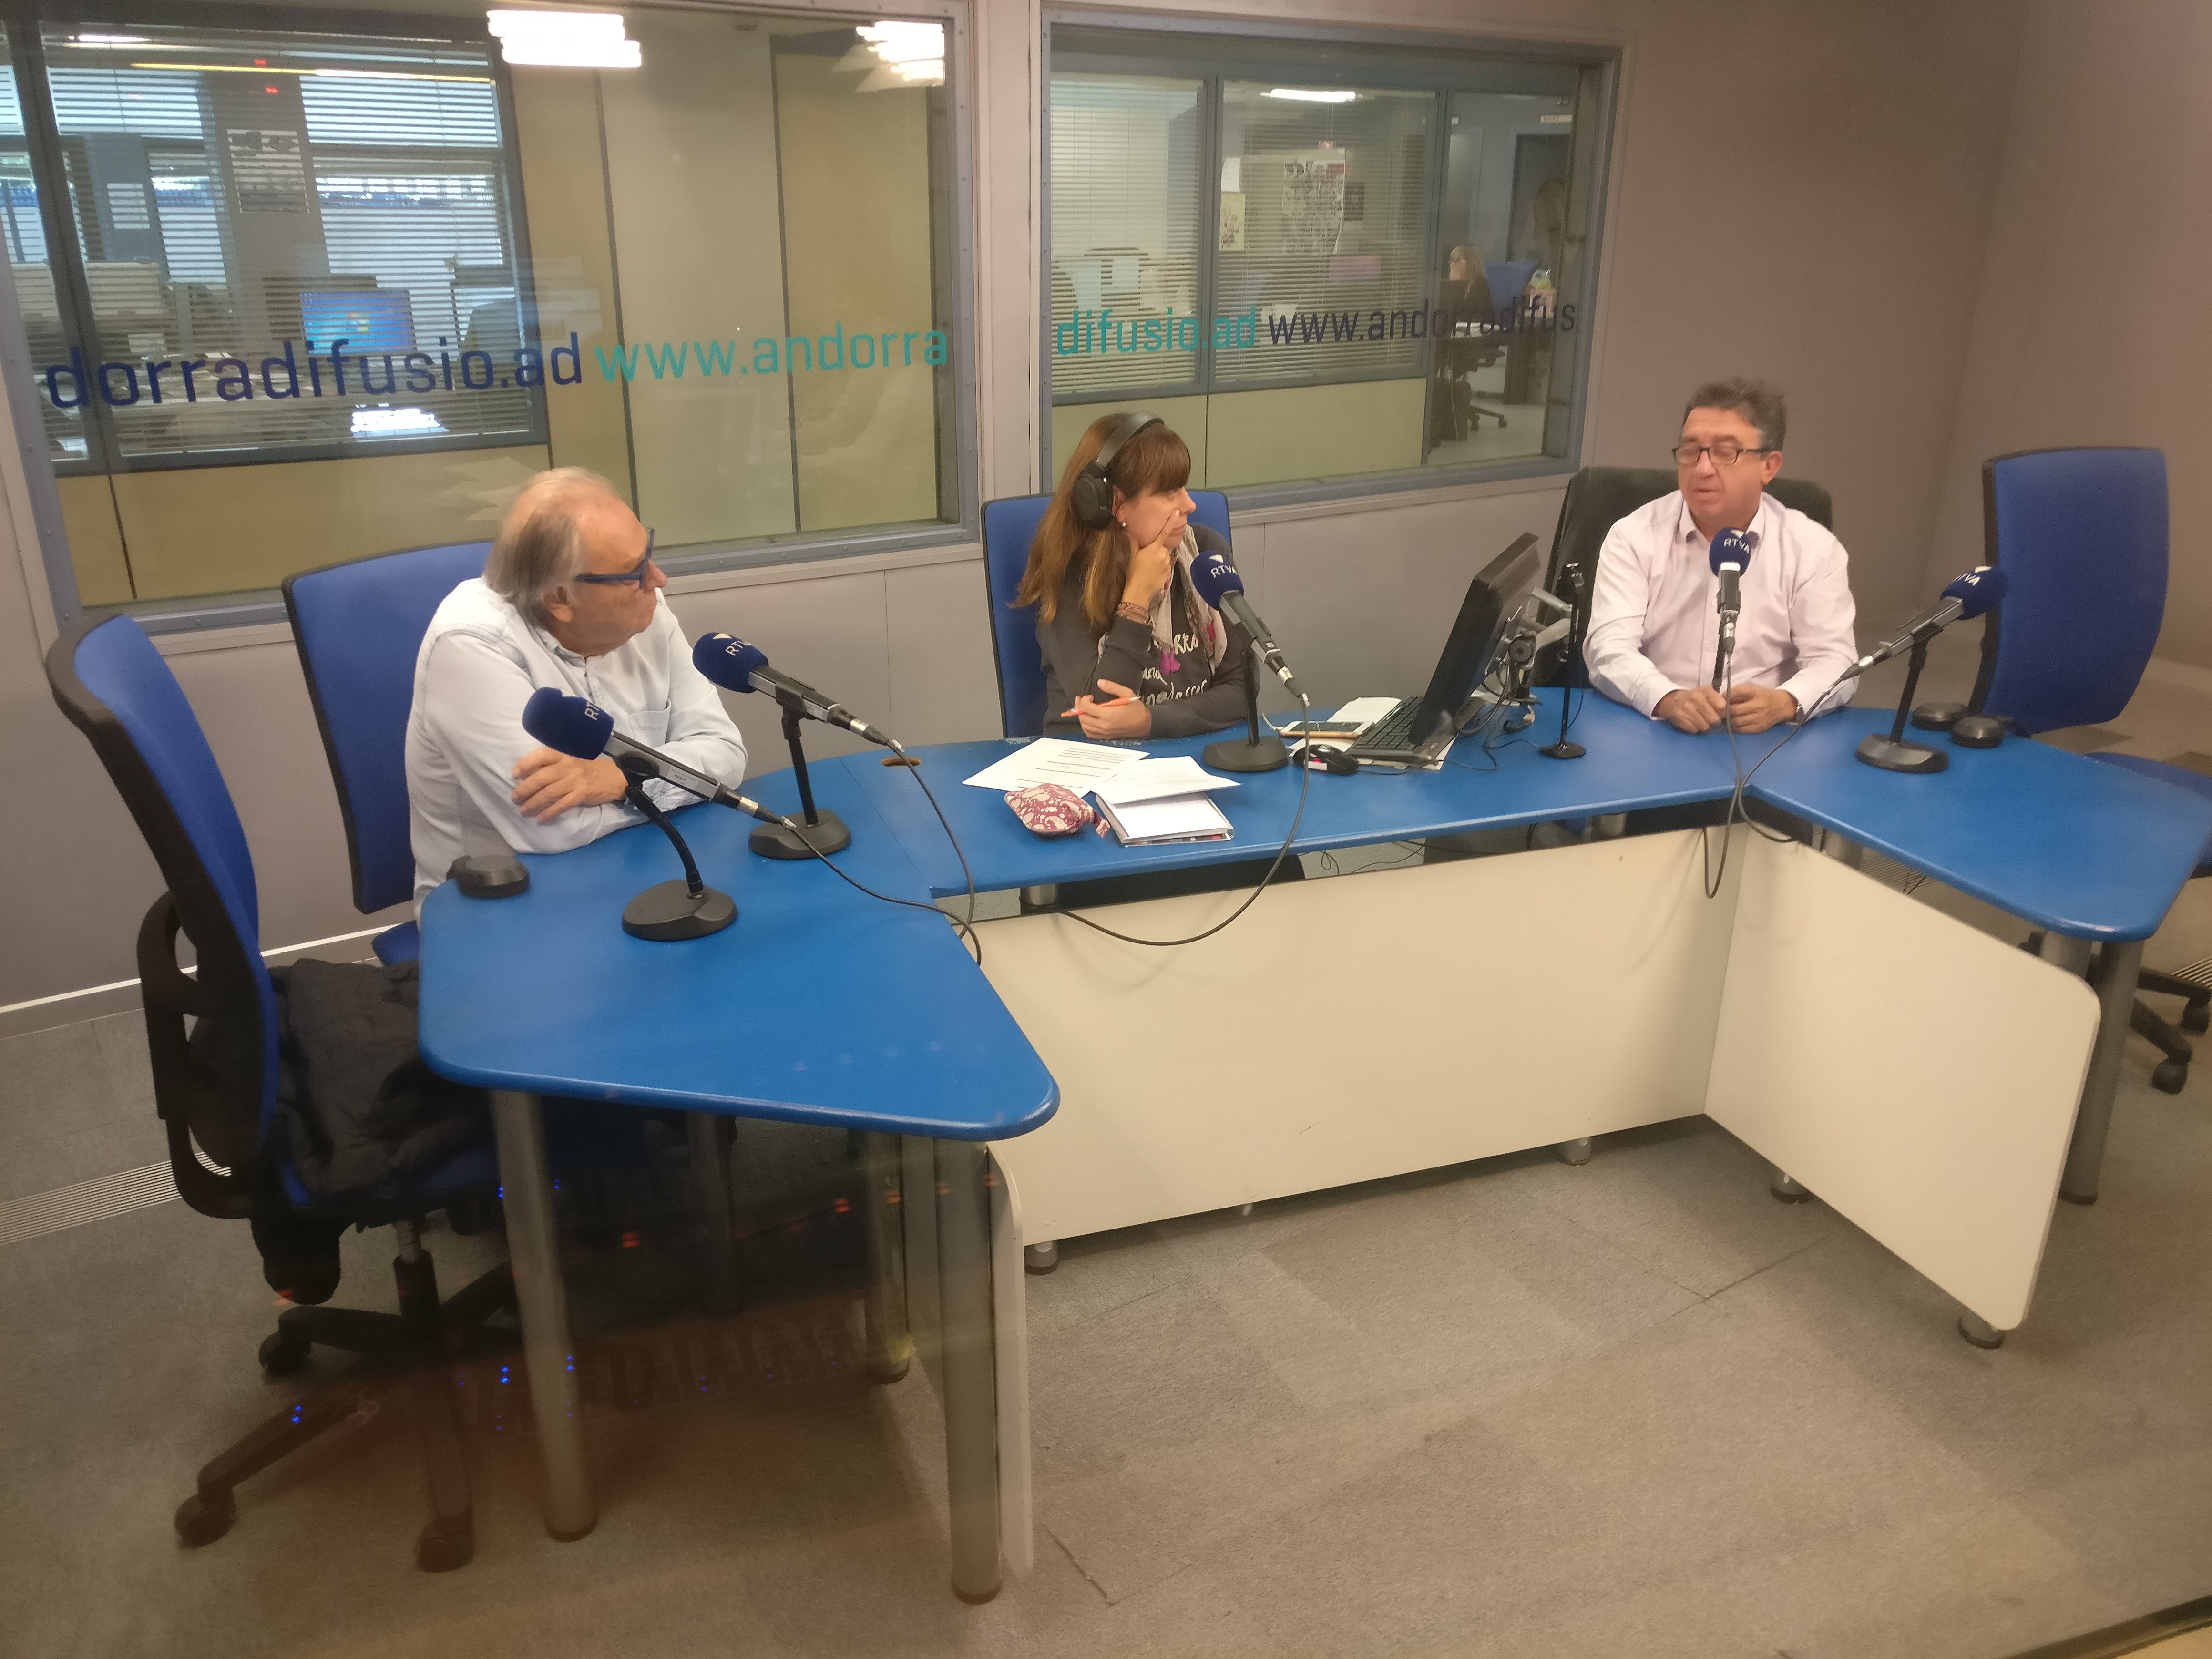 Tertúlia amb Paco Ruano i Josep Maria Cucalón 24 d'octubre del 2018